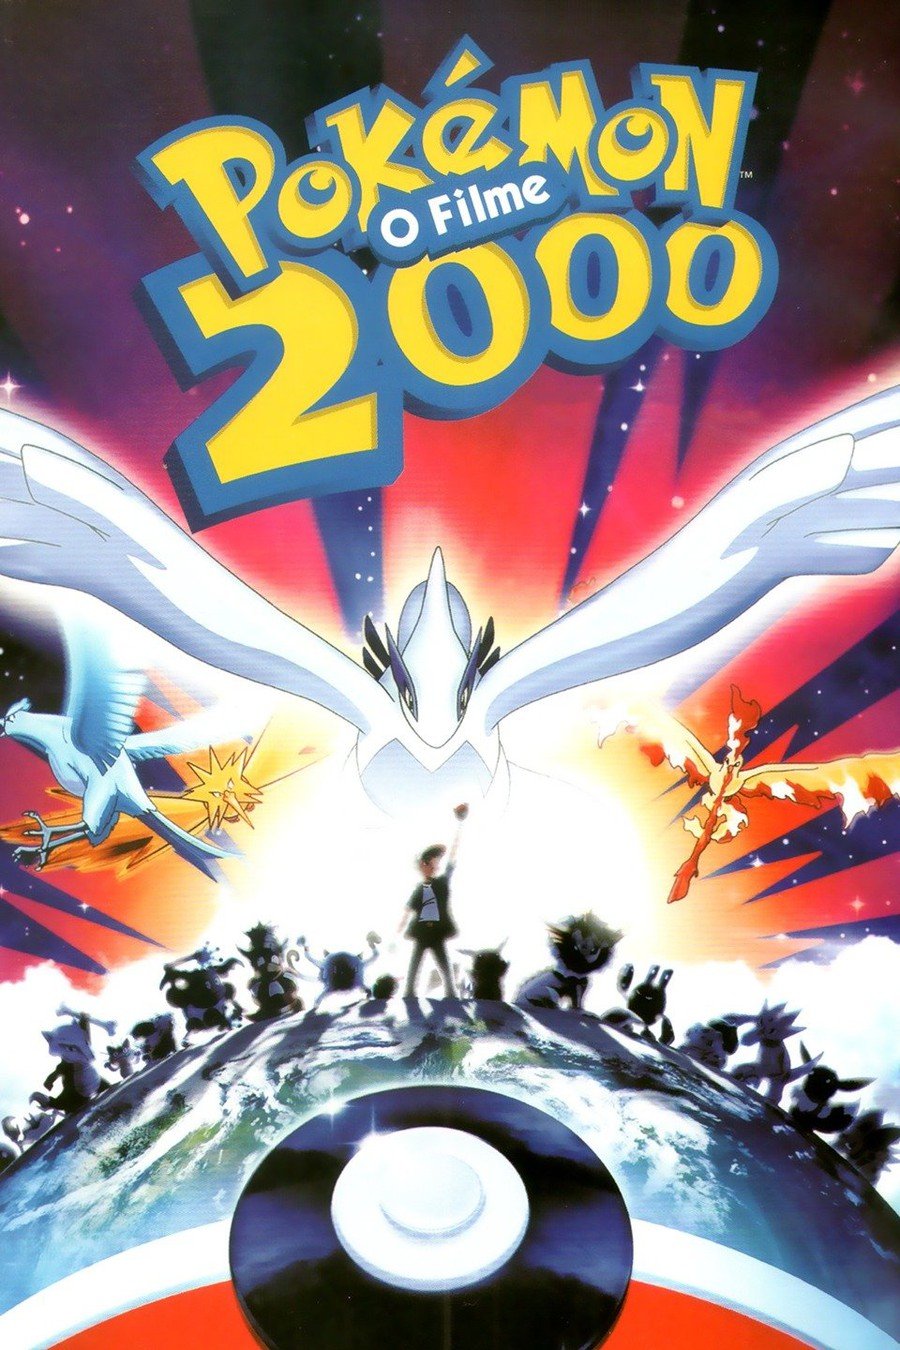 Top 10 Best Pokémon Movies